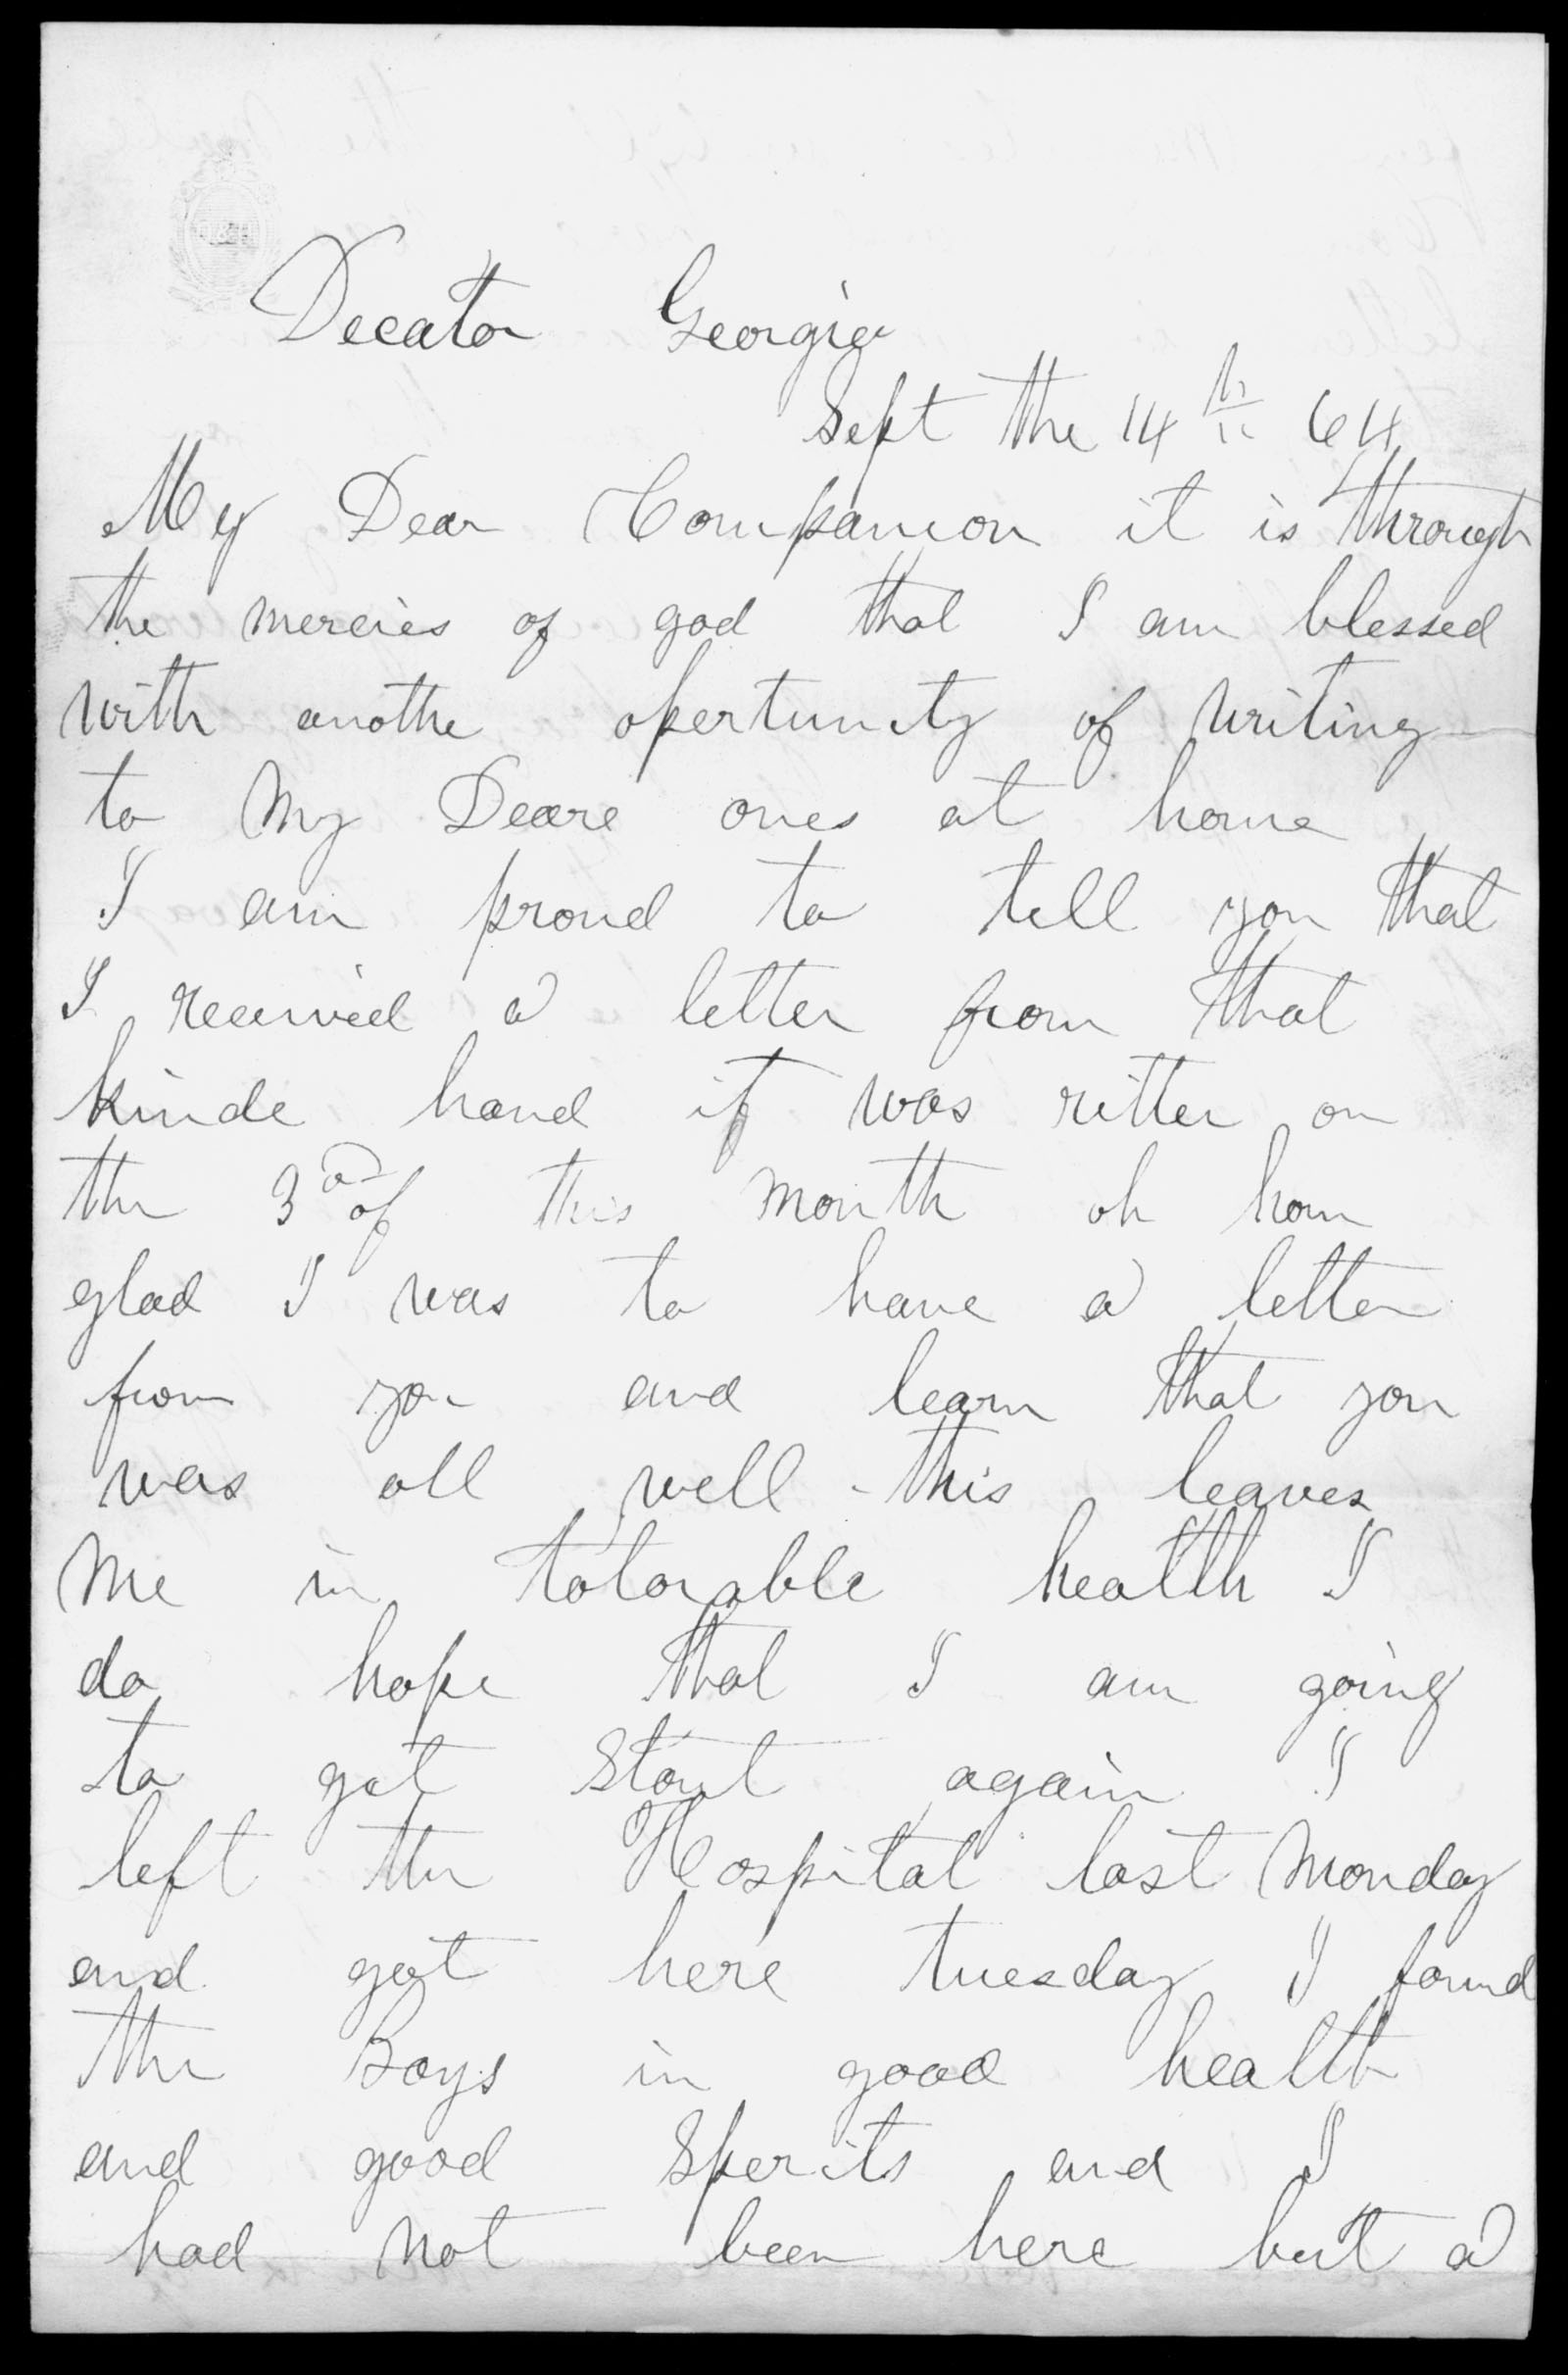 Letter, Samuel T. Reeves, Decatur, Georgia, to Huldah Reeves